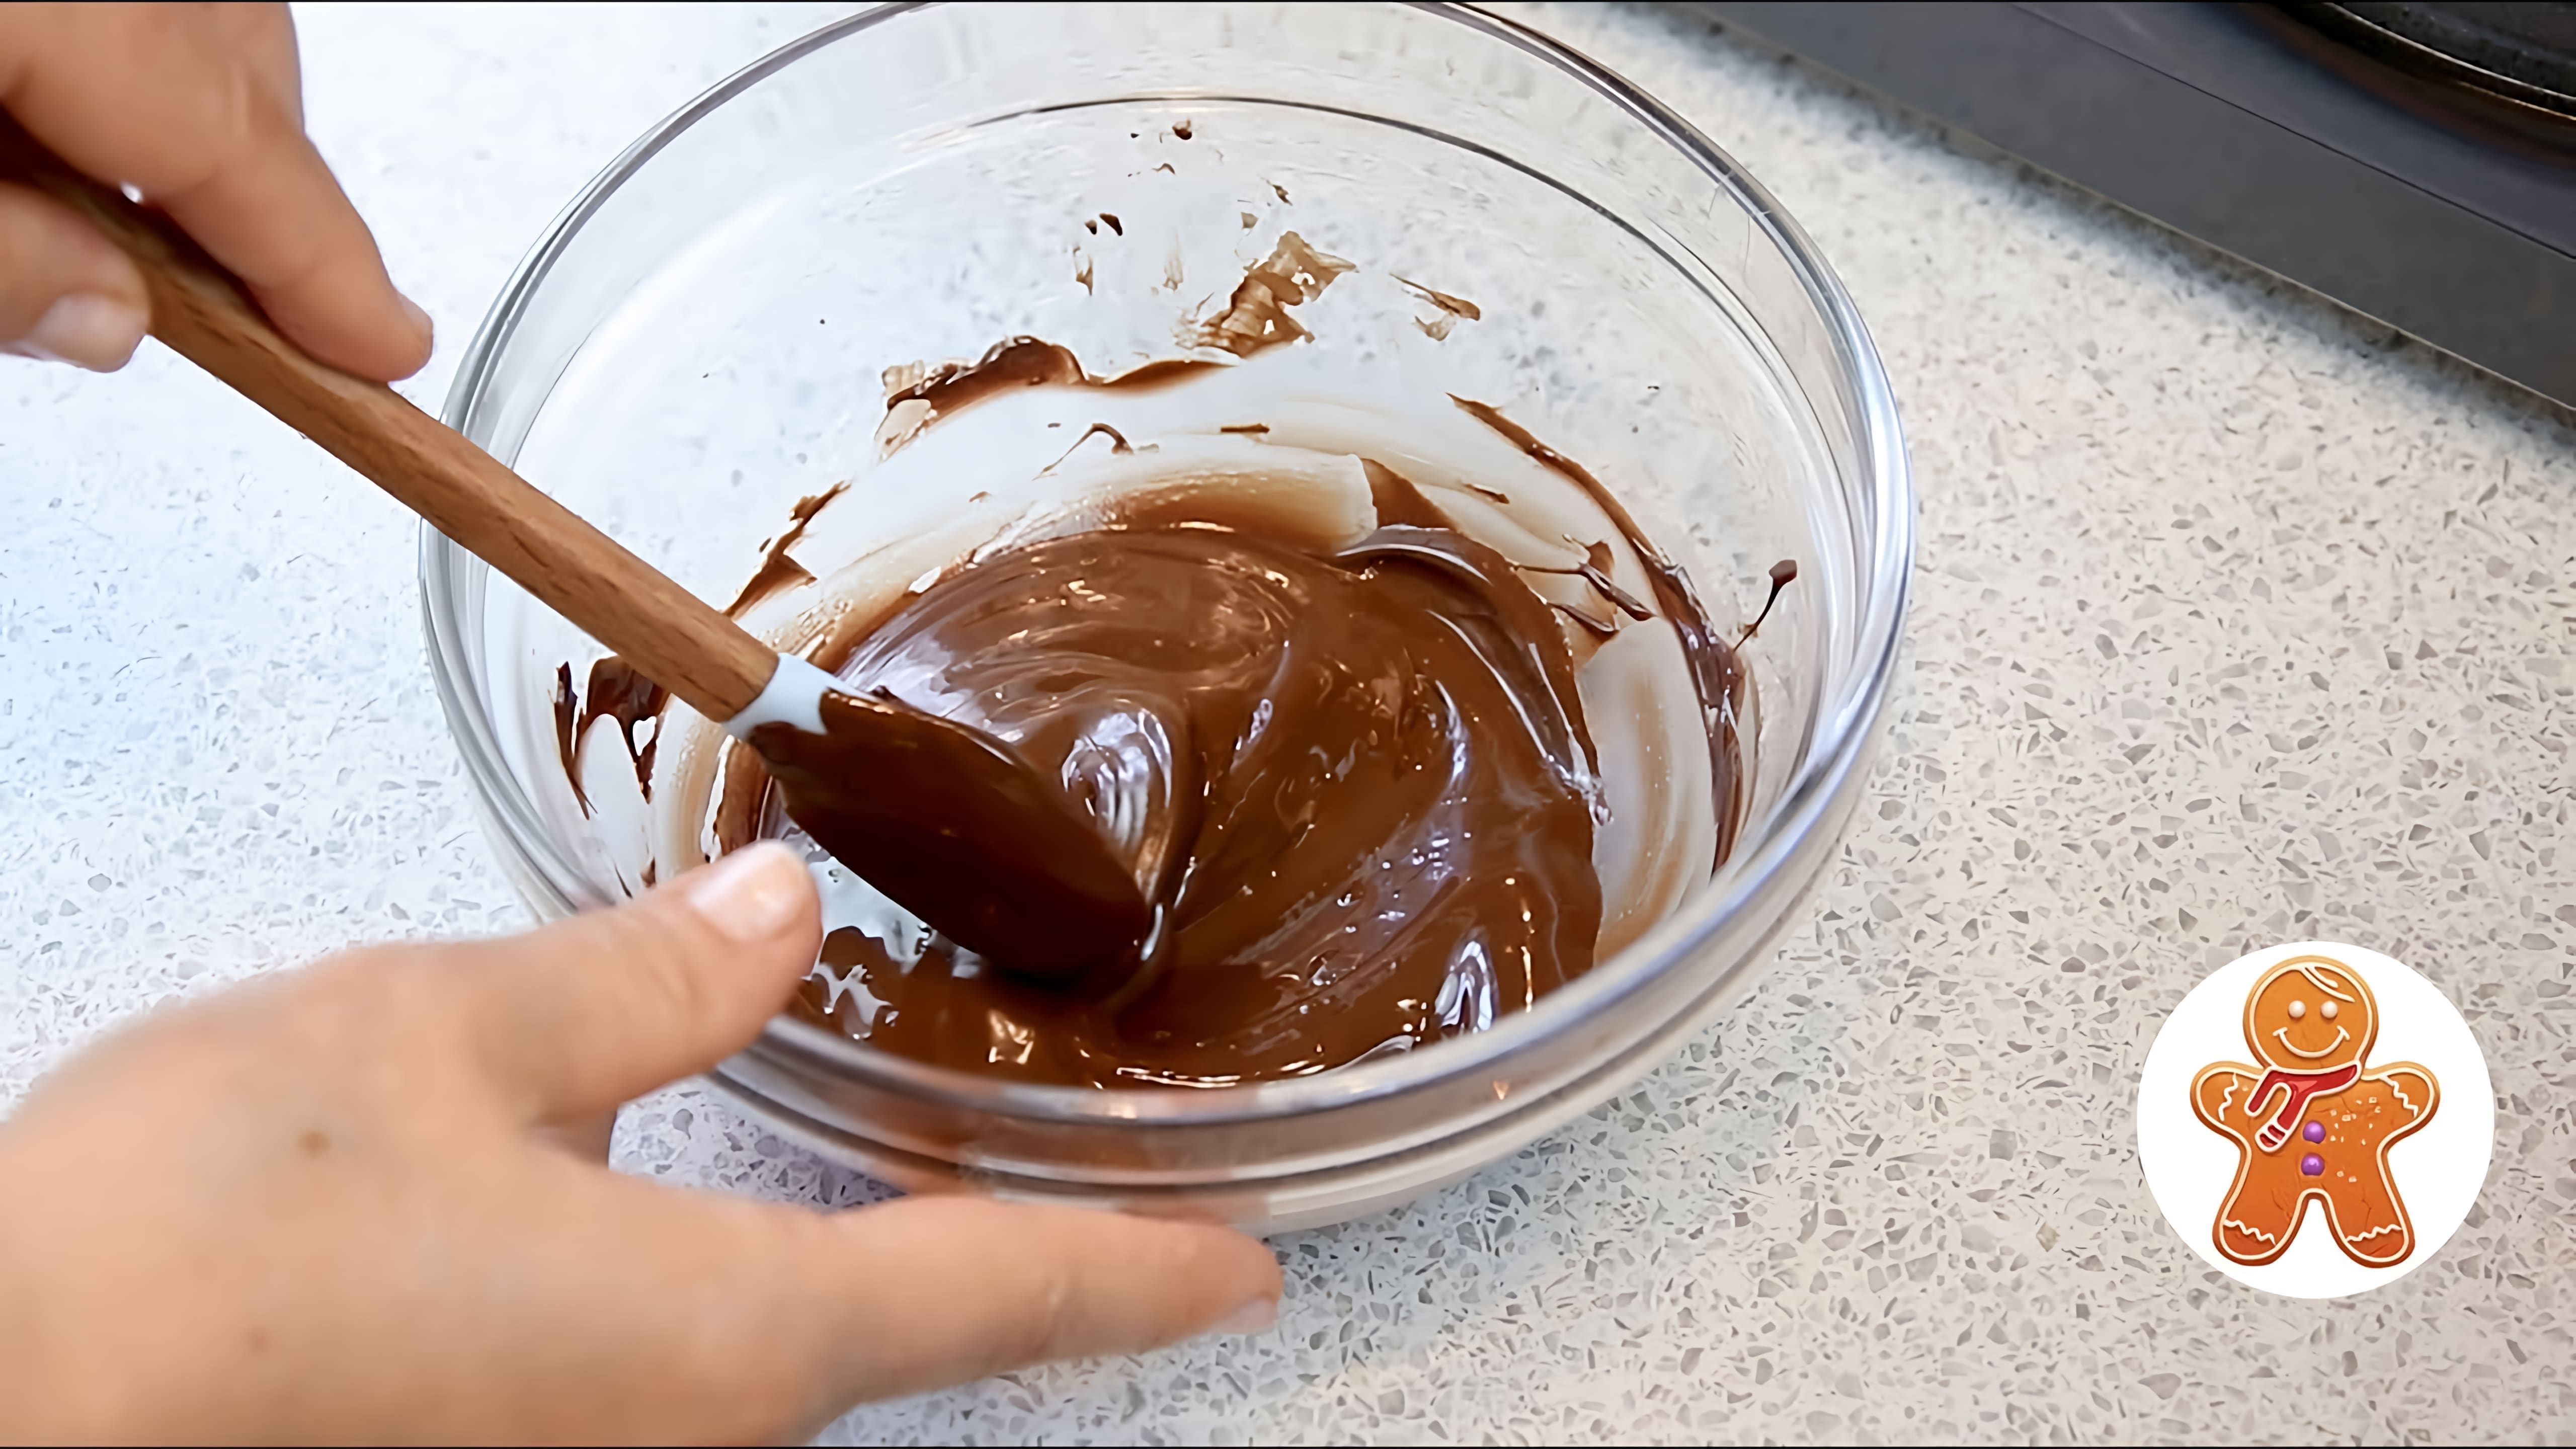 В этом видео рассказывается о темперировании шоколада - процессе, который позволяет получить твердый, хрупкий и нелипкий шоколад